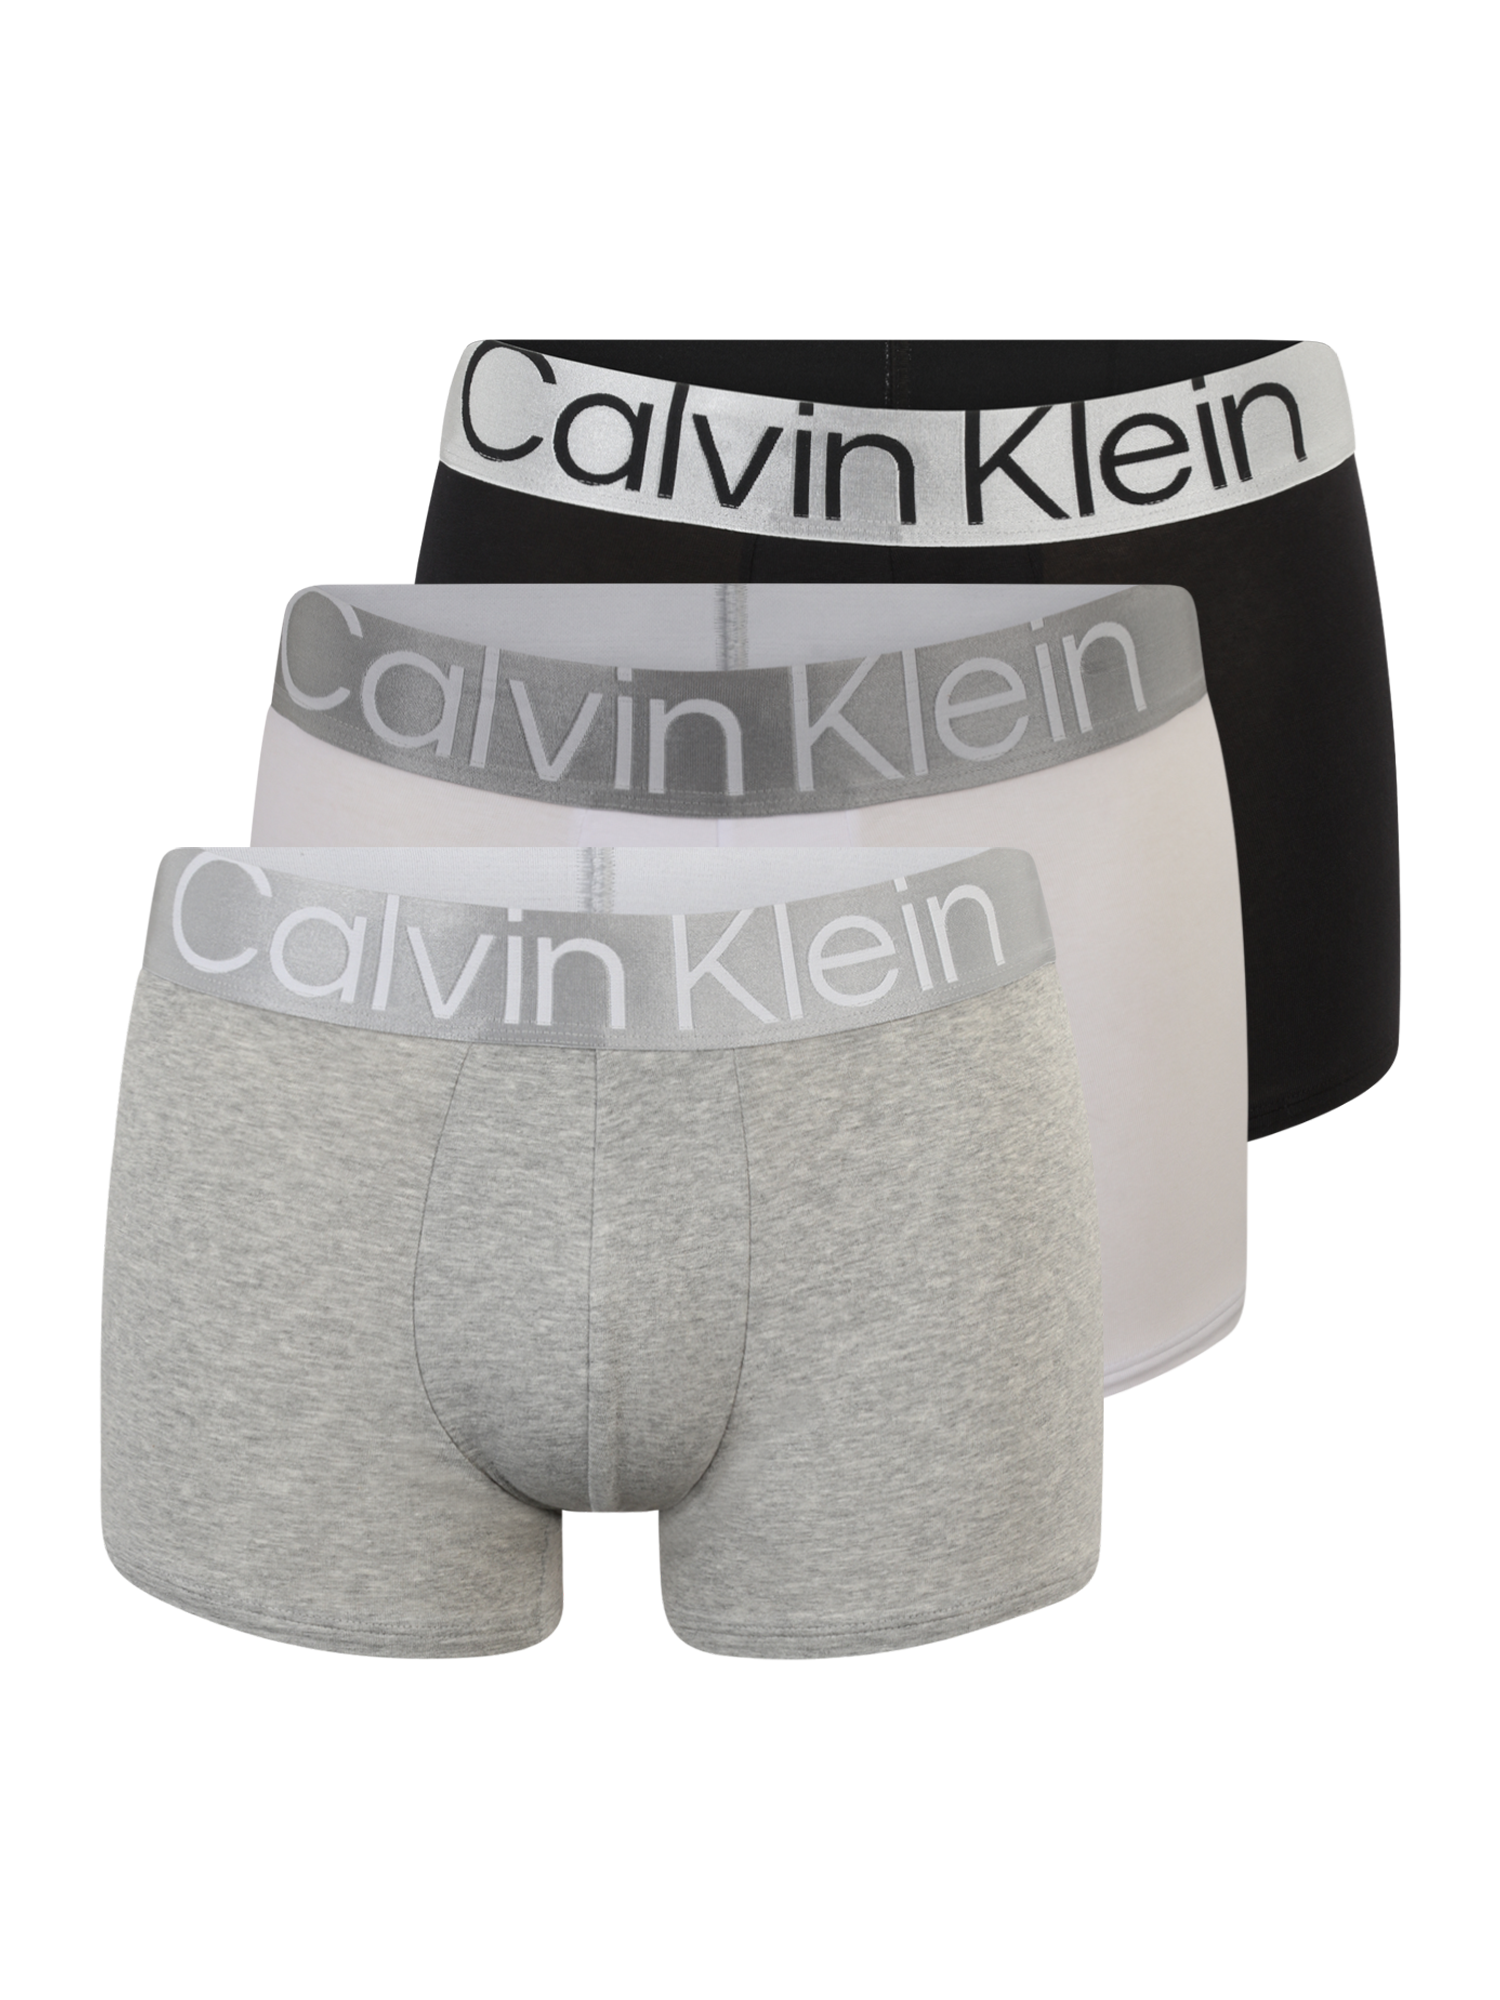 Mężczyźni Bielizna Calvin Klein Underwear Bokserki w kolorze Czarny, Nakrapiany Szary, Jasnoszarym 